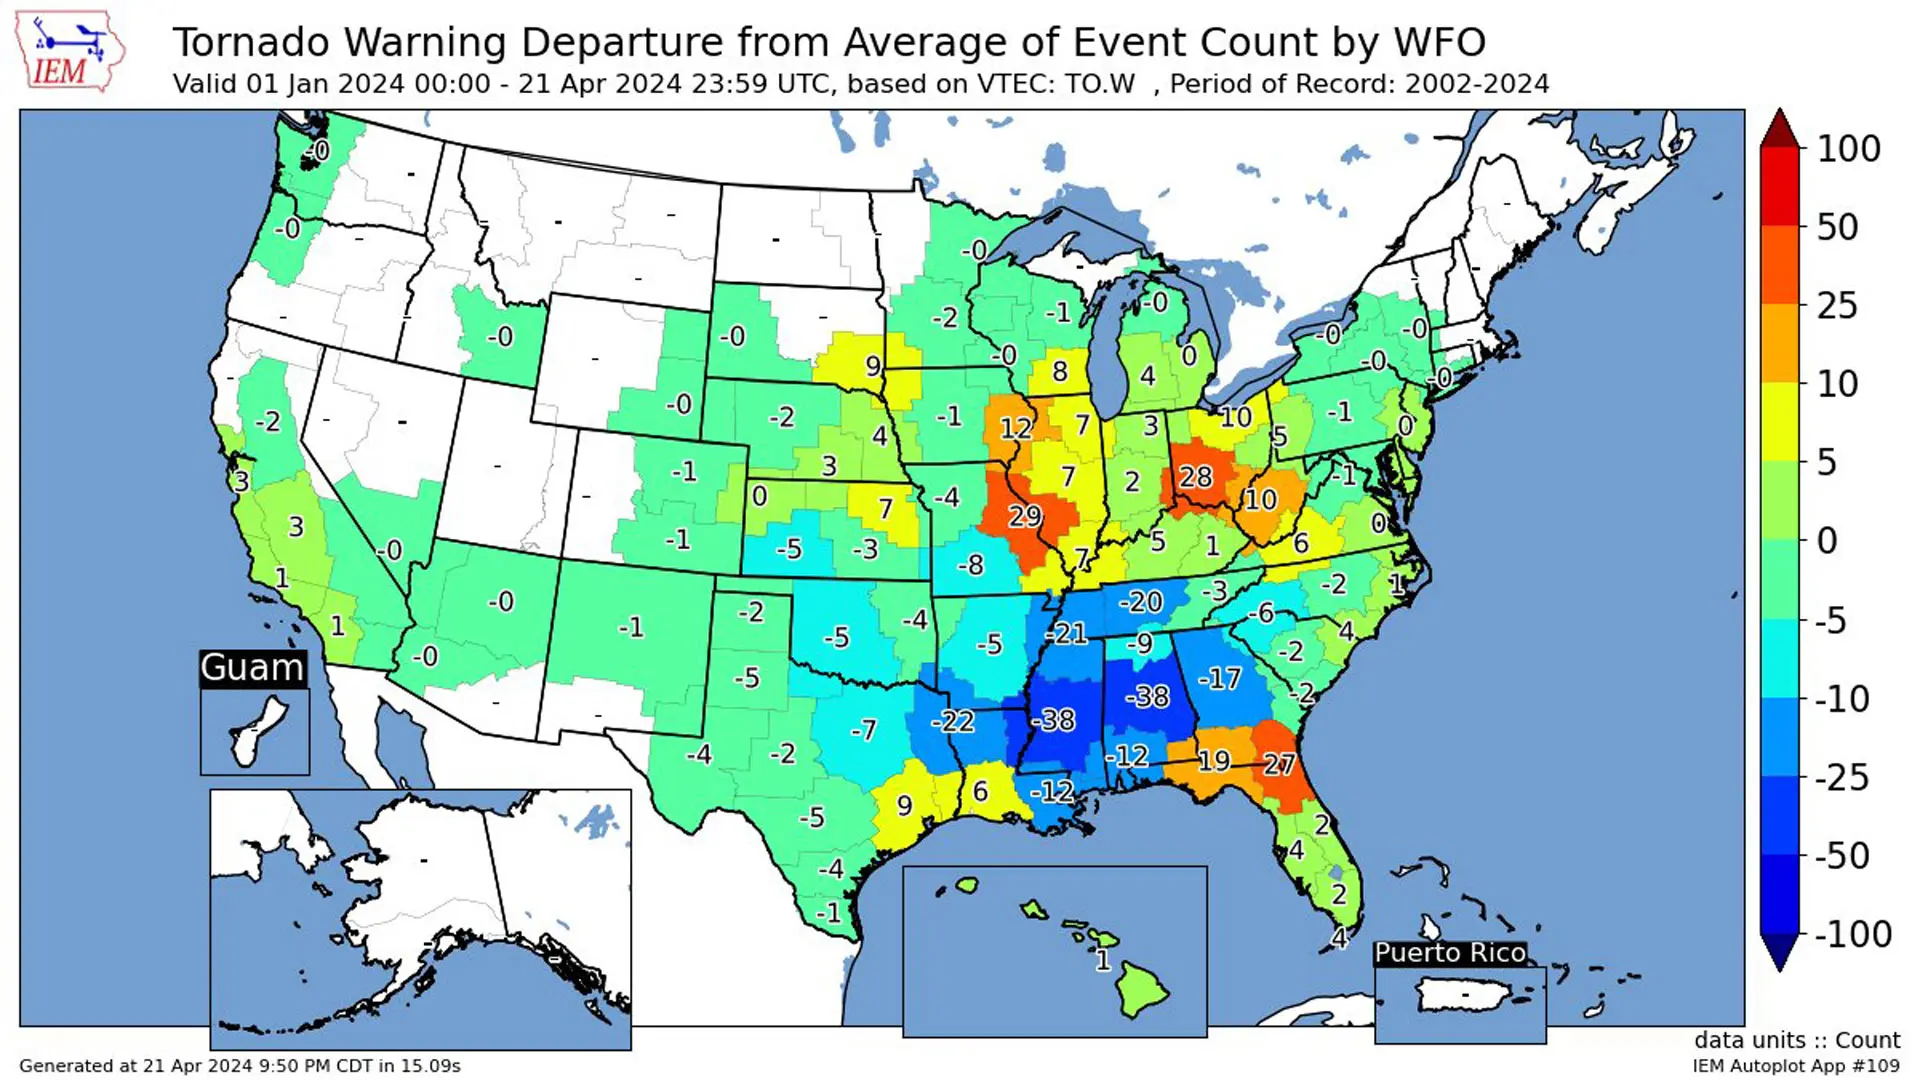 Tornado counts by NWS forecast region so far in 2024.